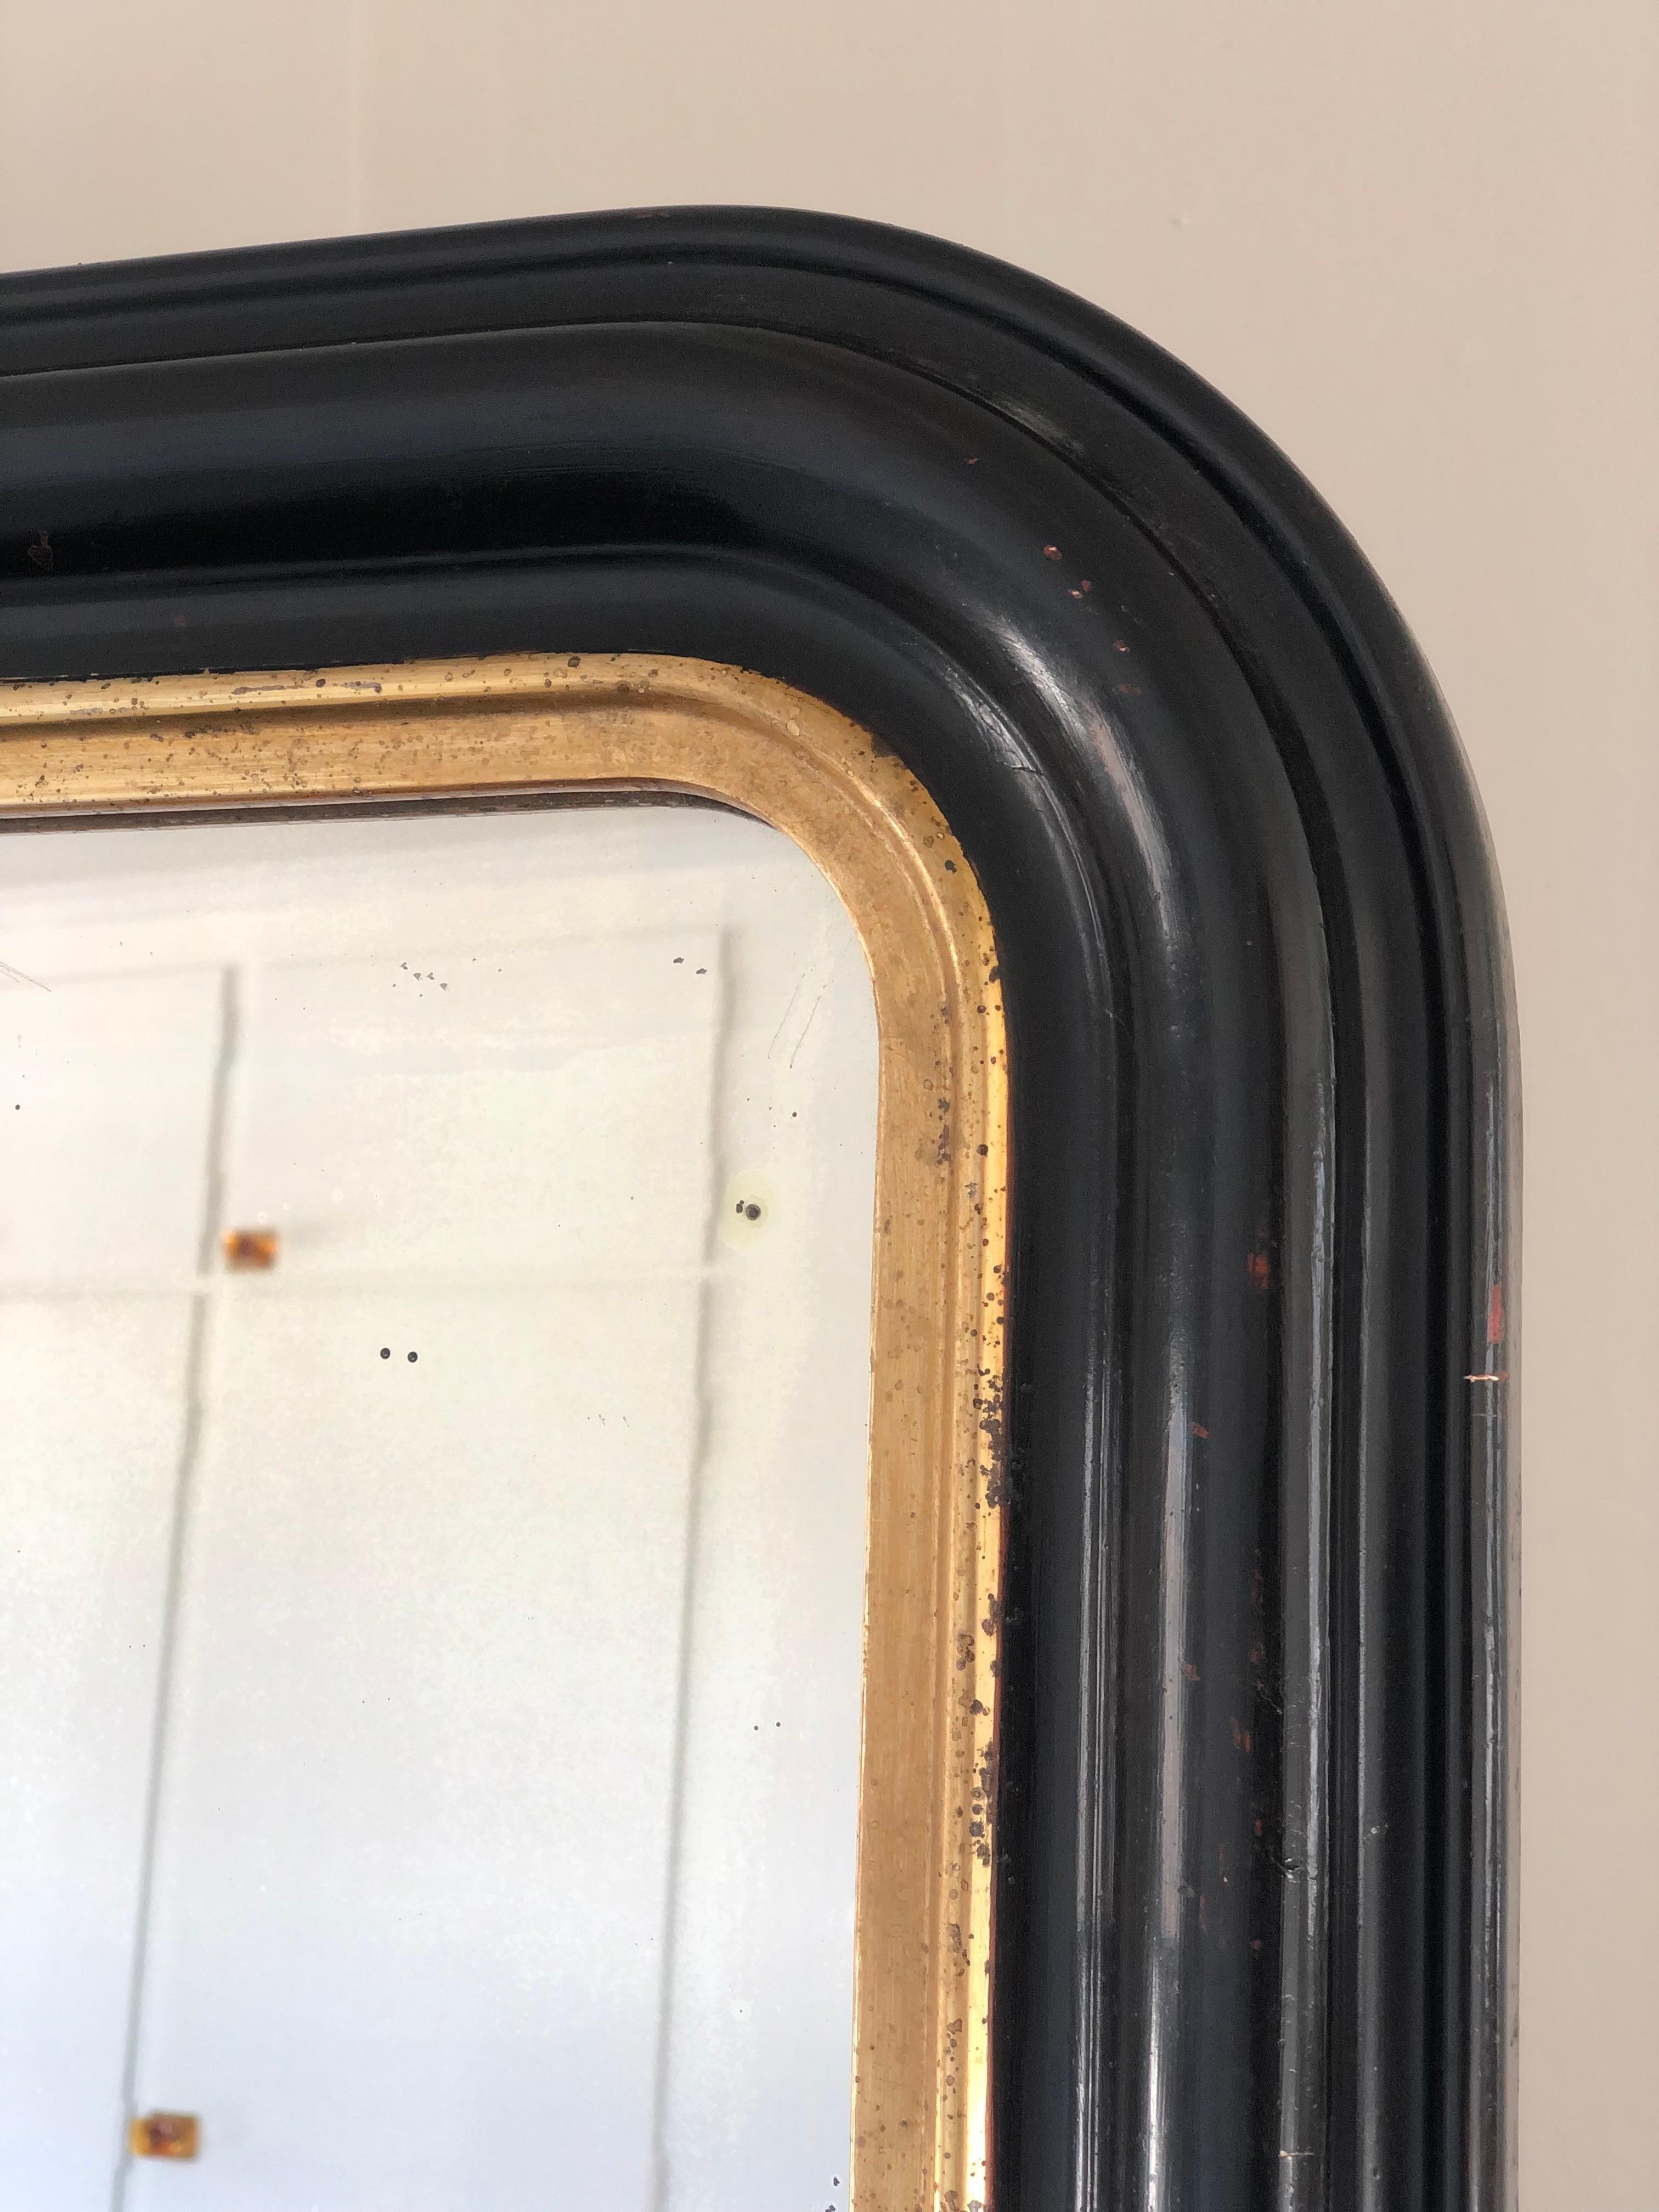 Ein sehr hochwertiger antiker Louis-Philippe-Spiegel aus Frankreich, Ende des 19. Jahrhunderts. Ein Auftritt mit Grandeur. Der reich geschnitzte Rahmen mit geschwungenen oberen Ecken in Schwarz hat eine Kante aus vergoldetem Holz. Original